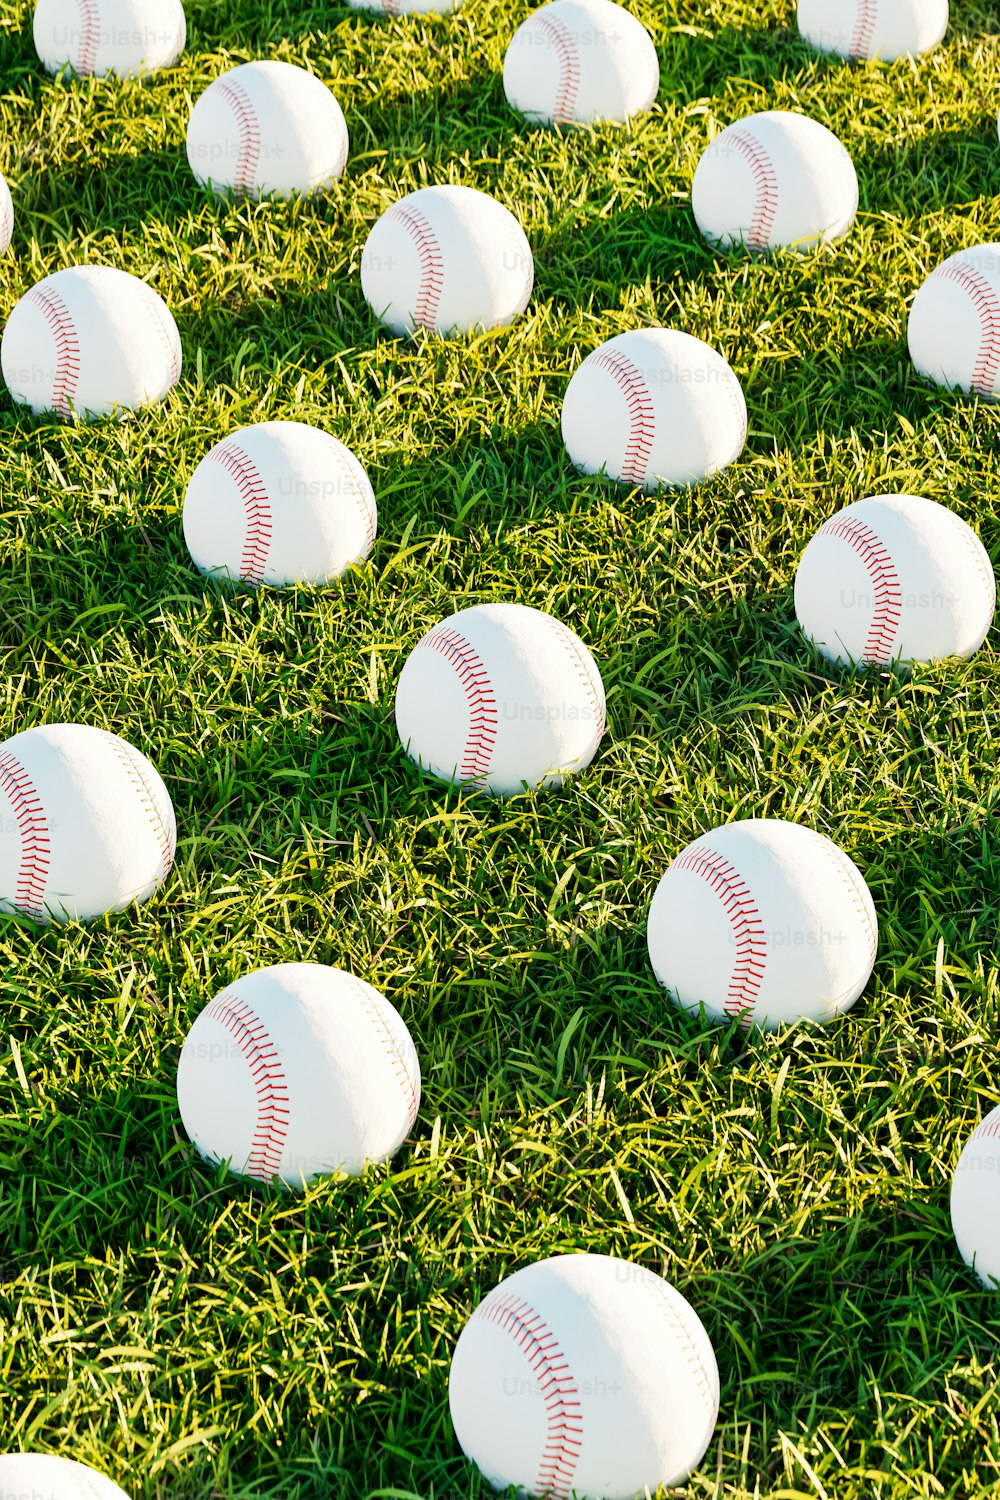 Un terrain plein de balles de baseball blanches posées sur de l’herbe verte